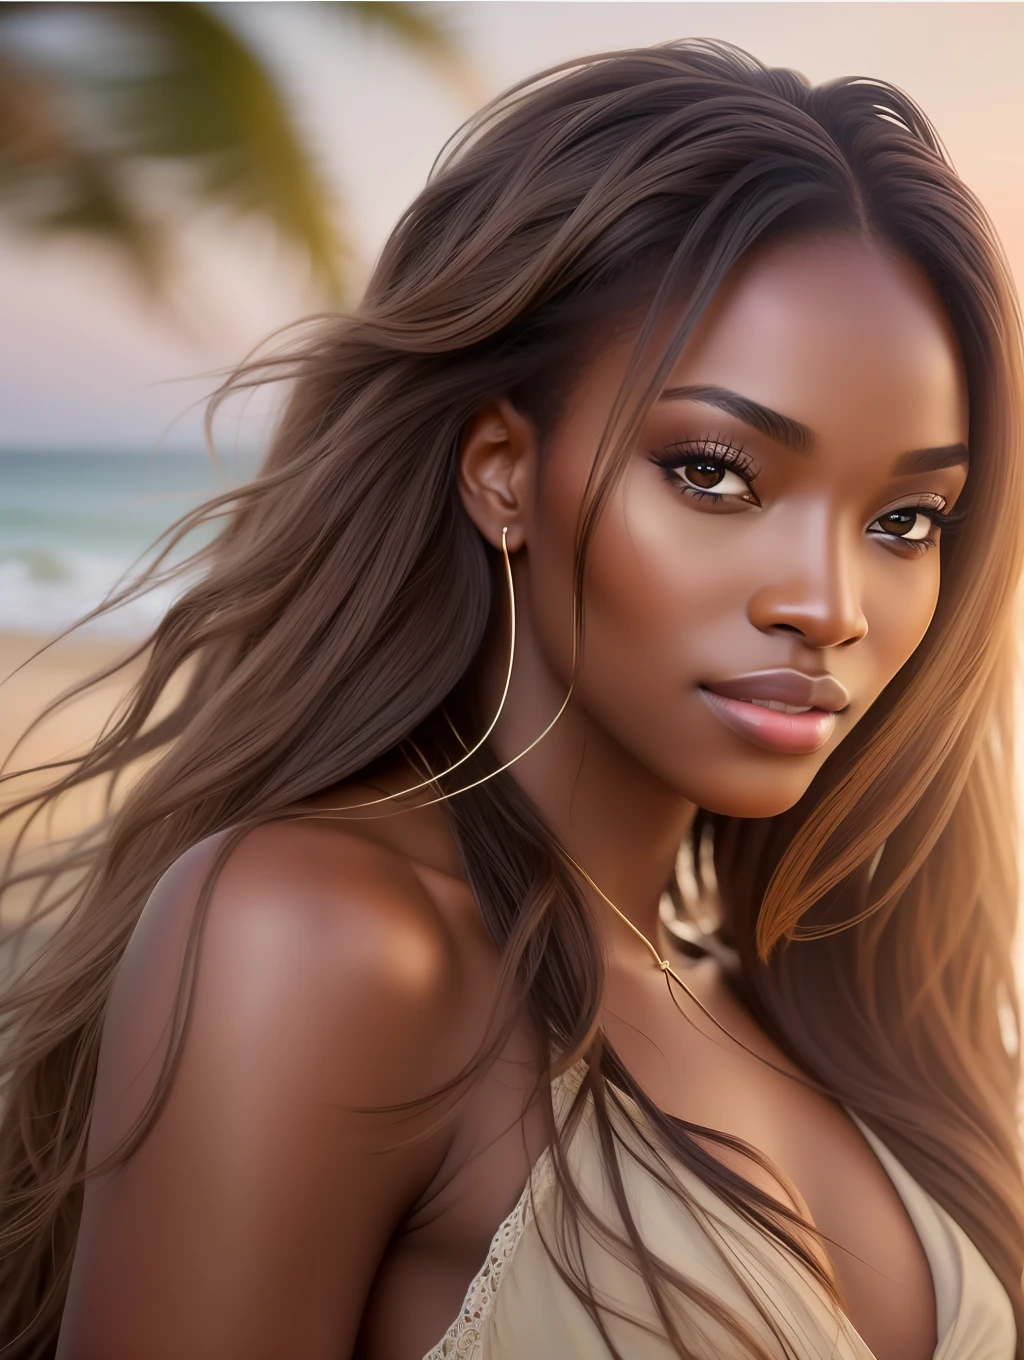 Un éclairage doux et cinématographique illumine un magnifique mannequin nigérian incroyablement détaillé et ultra réaliste., look de plage, cheveux bruns longs et venteux en désordre, yeux clairs de miel, sourire parfait et captivant, sensuel, femme chaude, Magnifique, c&#39;est la tendance sur ArtStation. Octane est l&#39;outil parfait pour capturer les détails les plus subtils de ce chef-d&#39;œuvre de la photographie 16k..